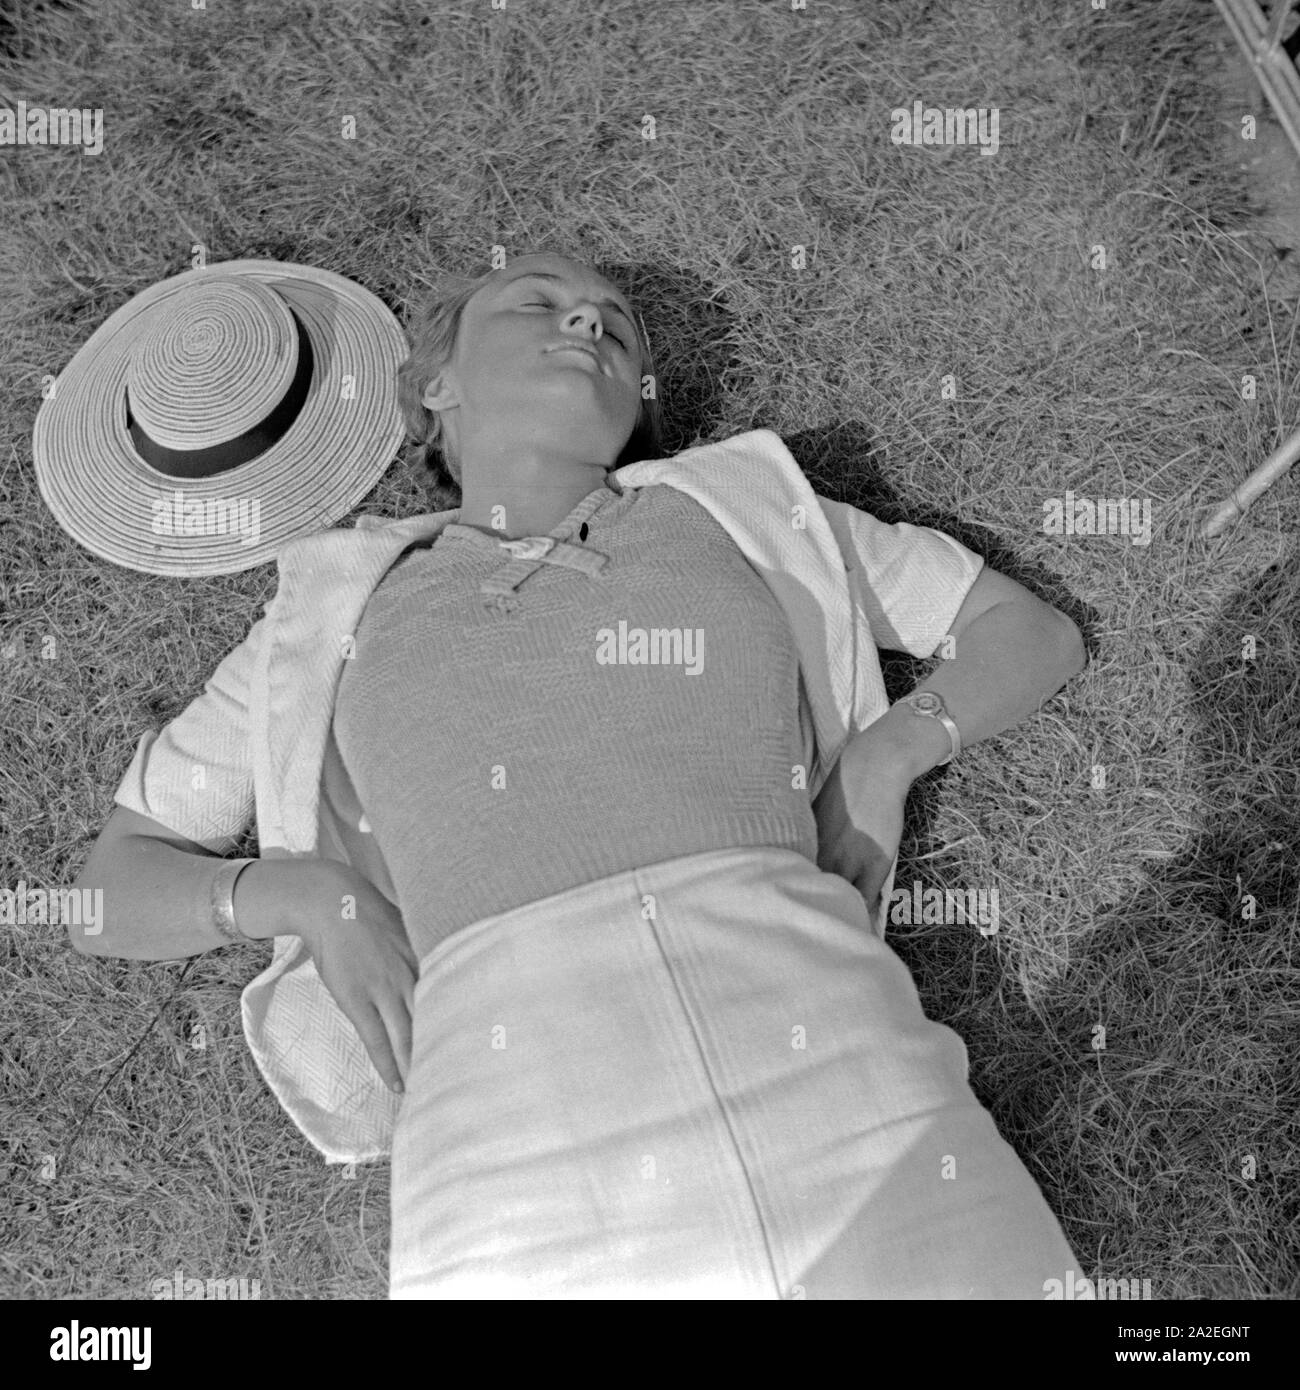 Eine junge Frau bei einem Sonnenbad auf einer Wiese in Berlin, Deutschland, 1930er Jahre. Eine junge Frau, Sonnenbaden an einem Rasen in Berlin, Deutschland 1930. Stockfoto